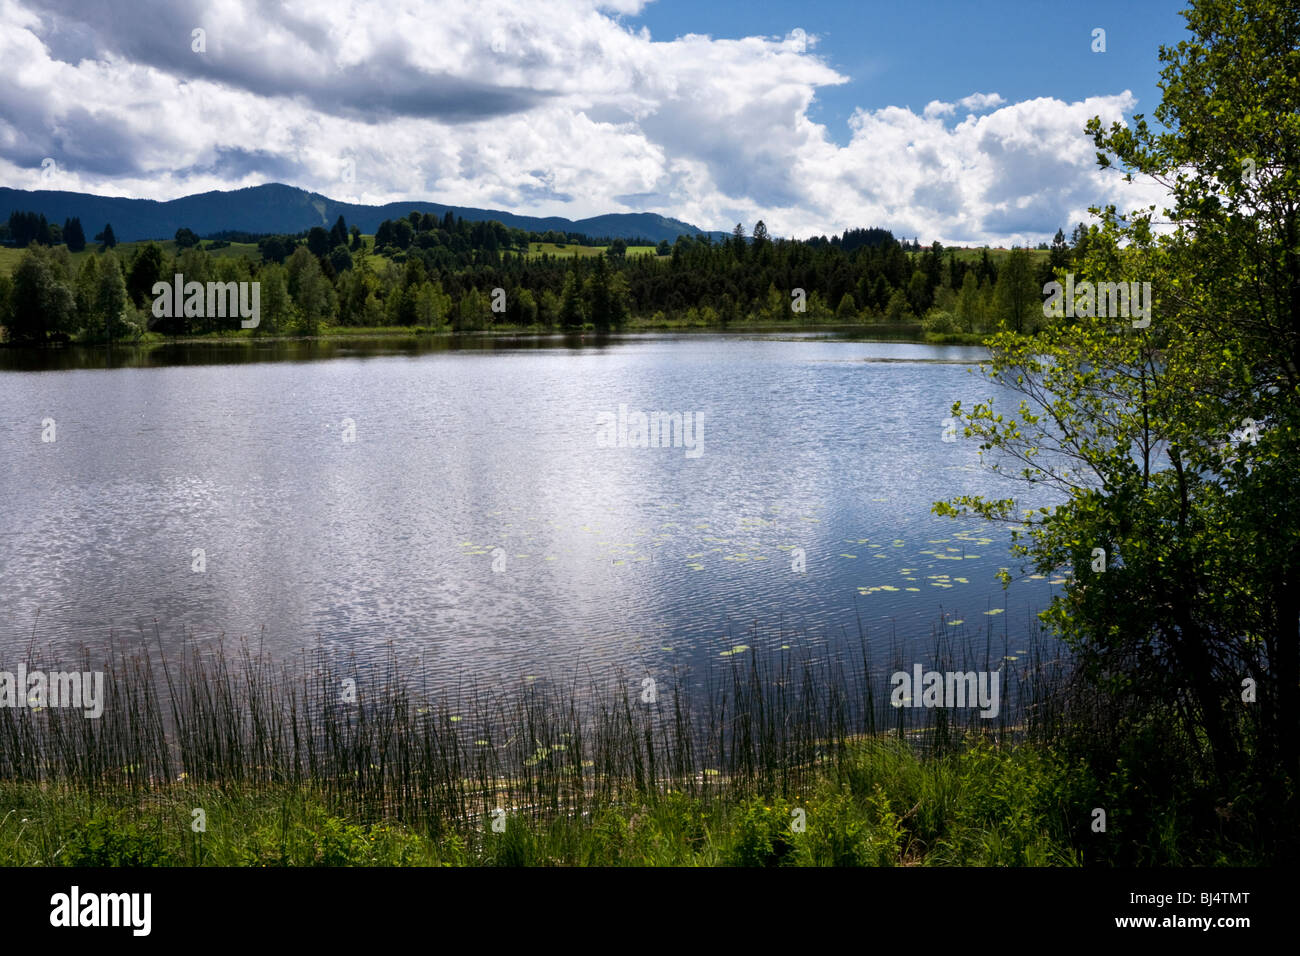 Lake with landscape, Schwaigsee Lake, Bavaria, Germany Stock Photo